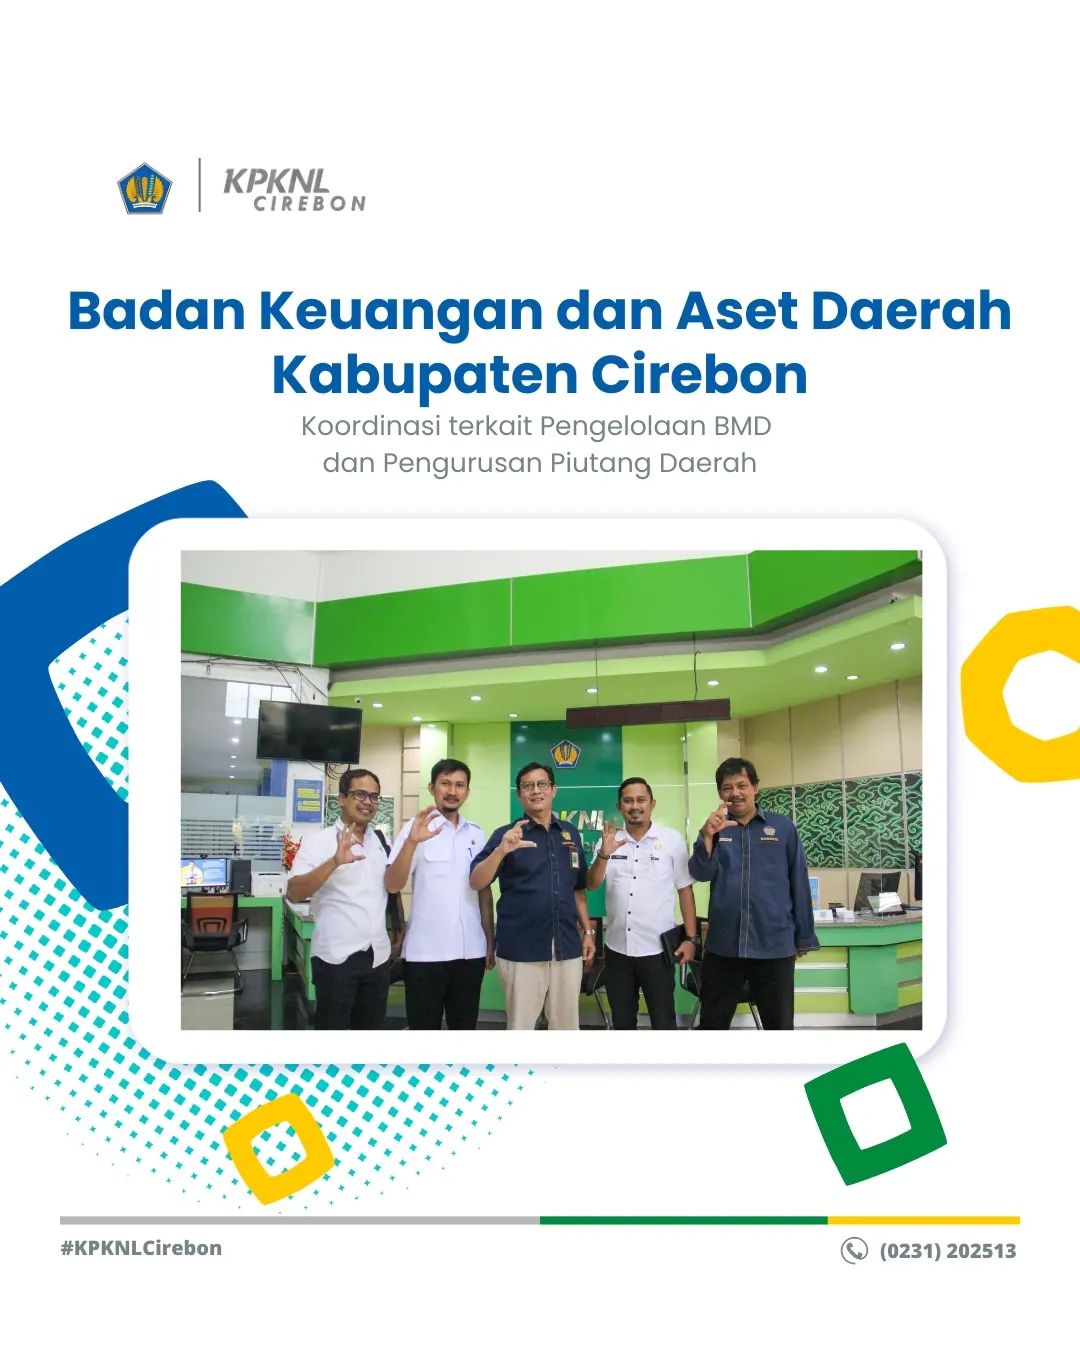 BKAD Kabupaten Cirebon Koordinasi terkait Pengelolaan BMD dan Pengurusan Piutang Daerah